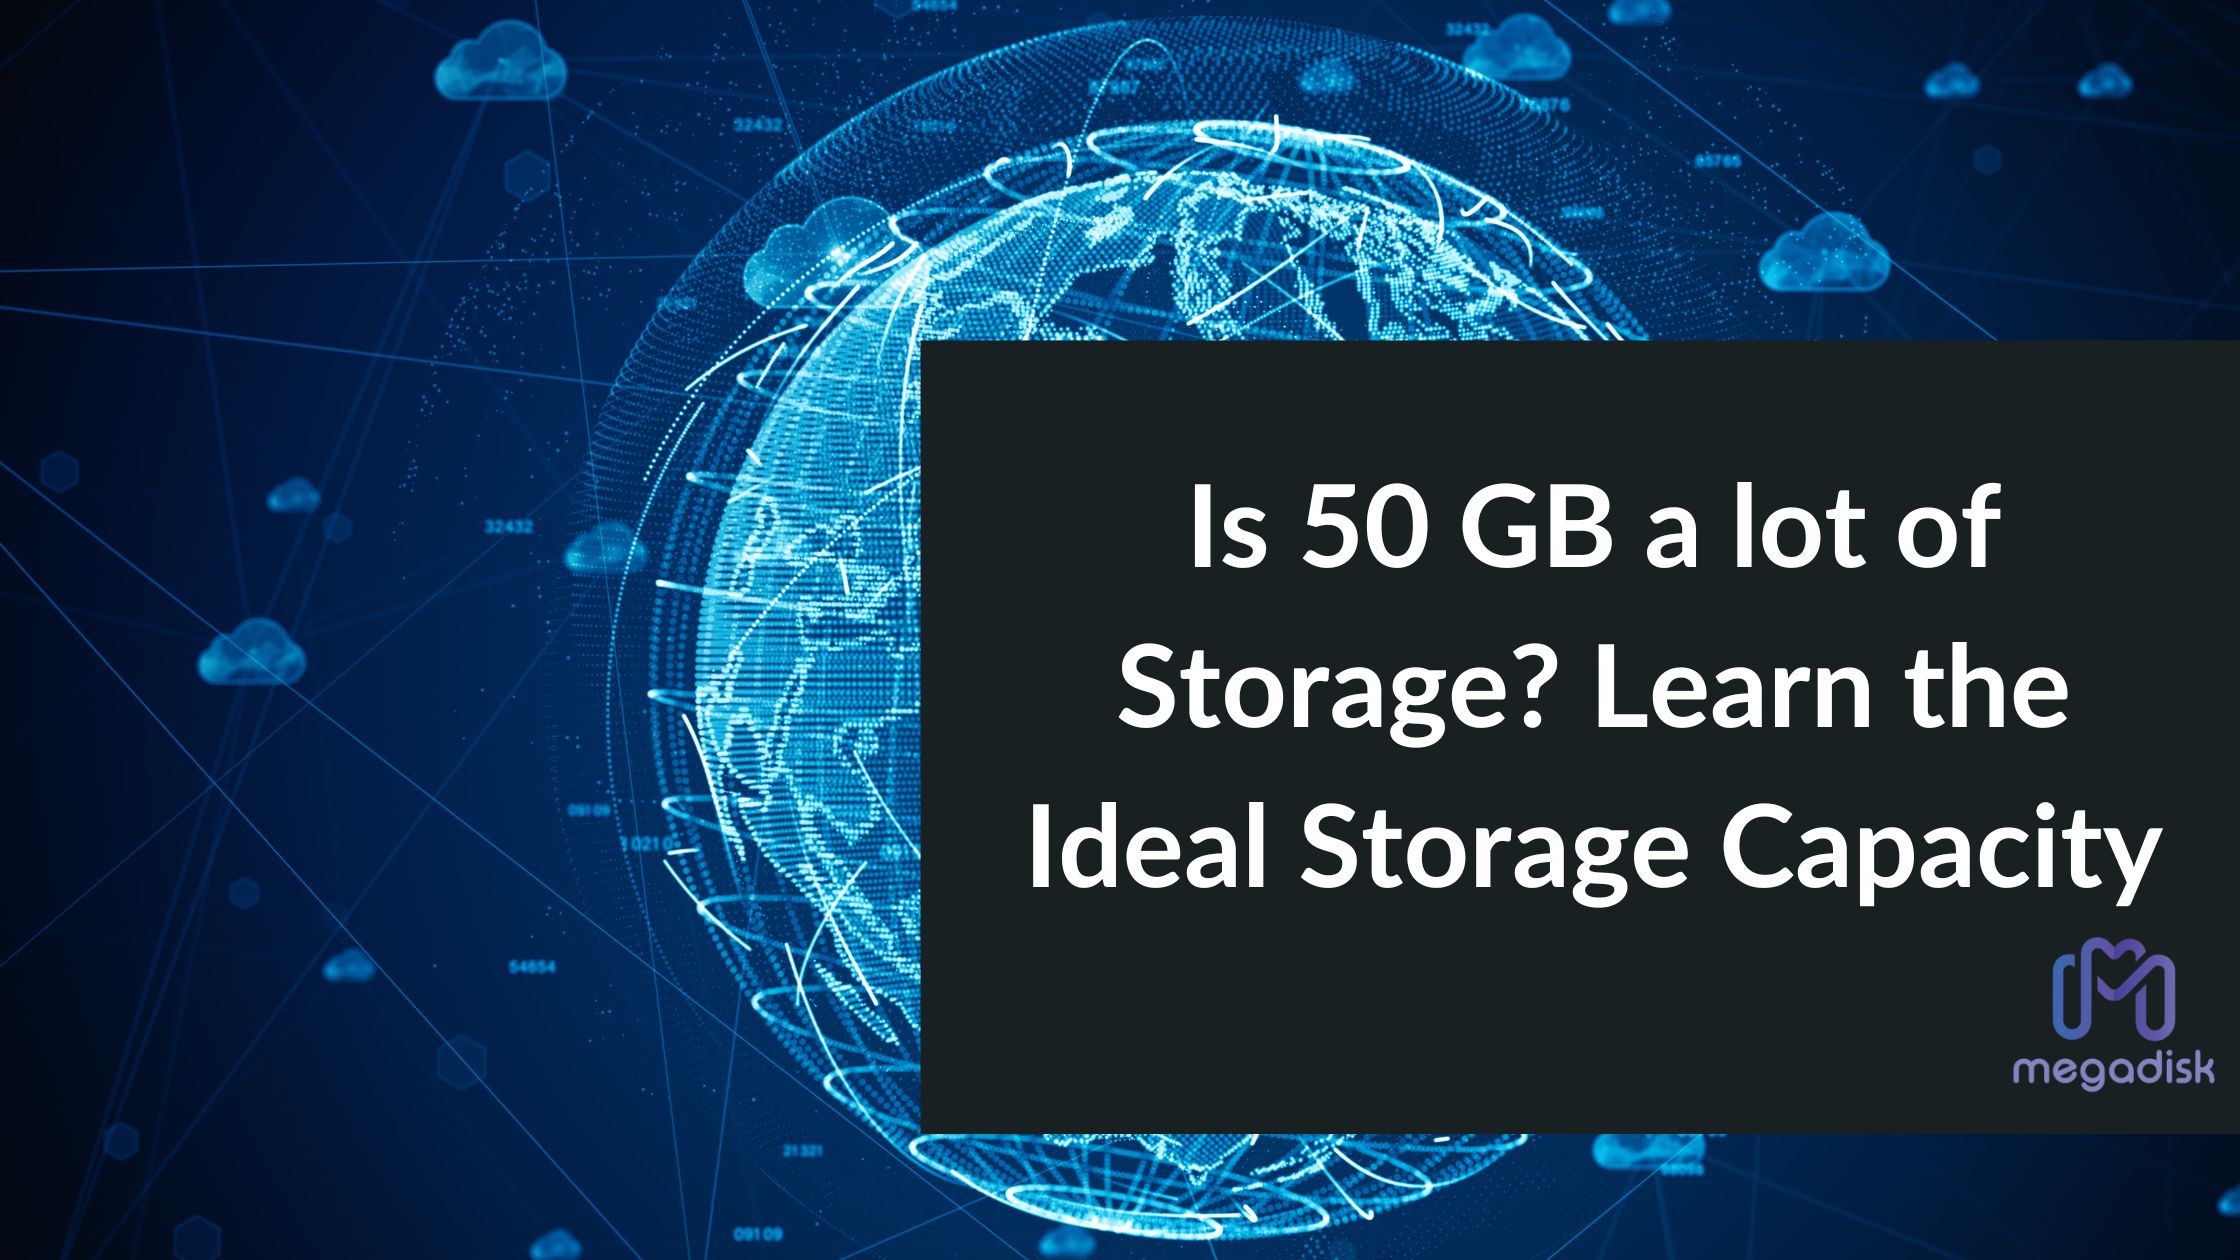 50 GB of storage